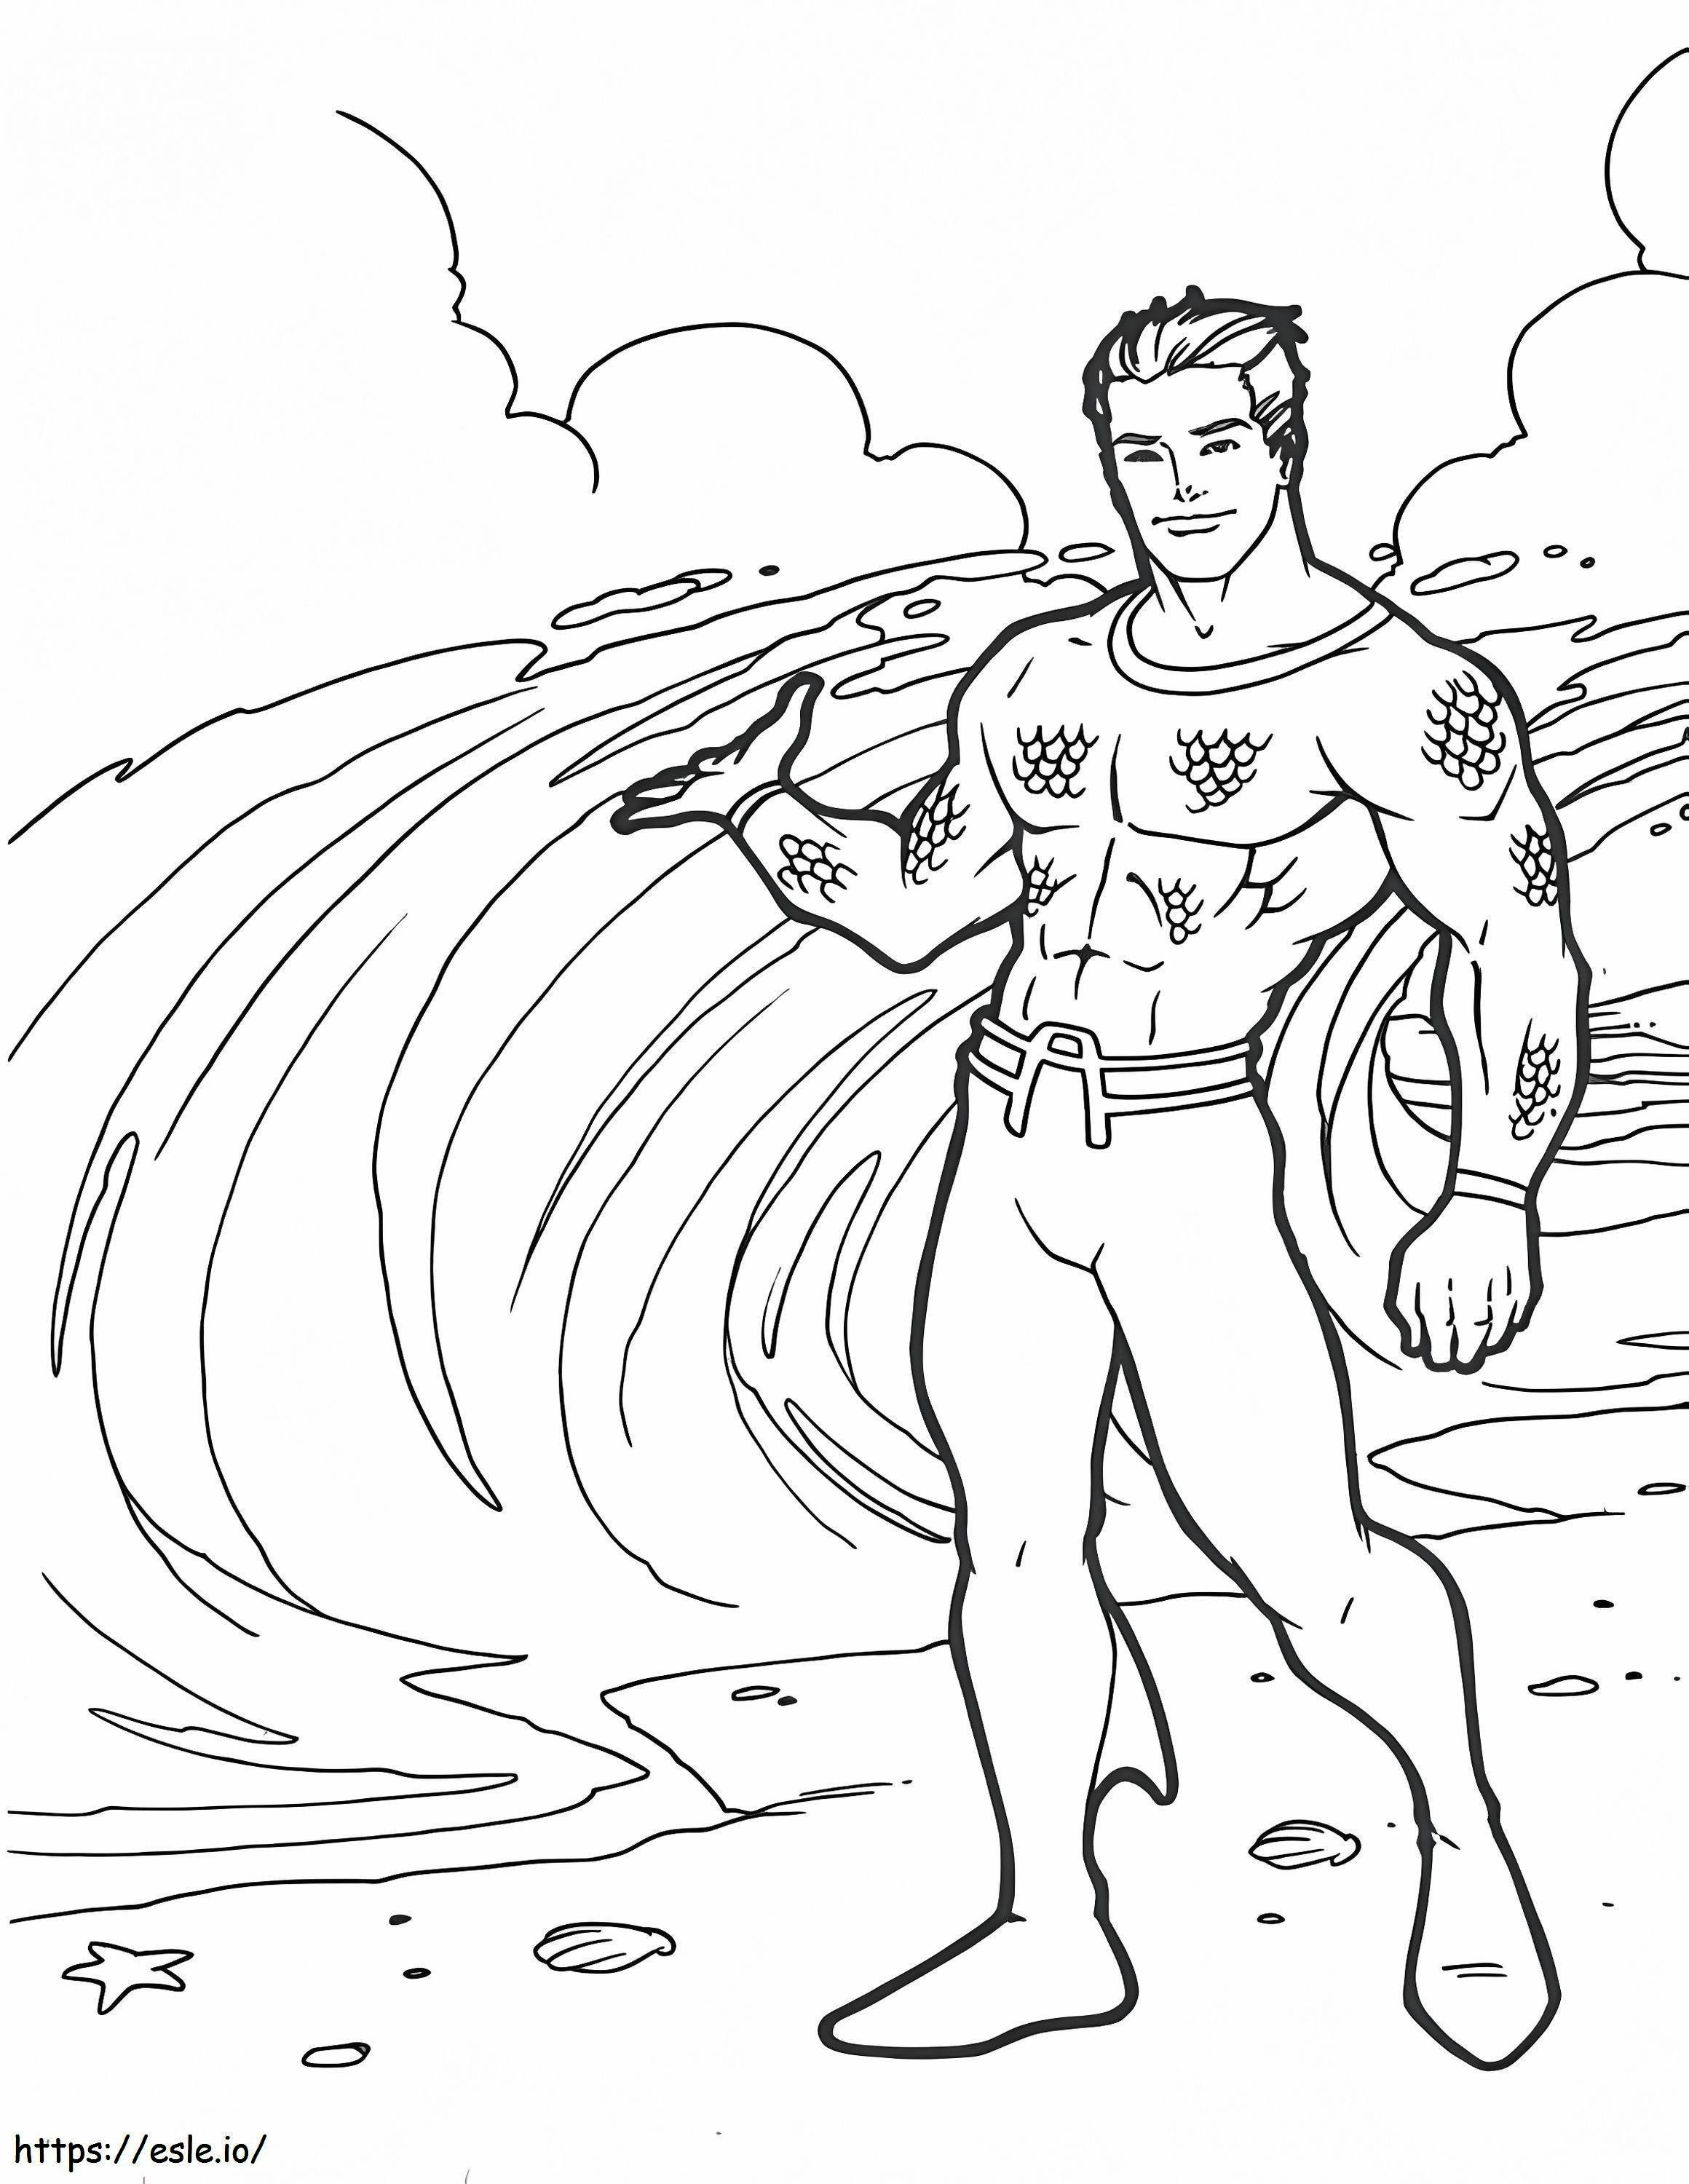 Aquaman 13 ausmalbilder